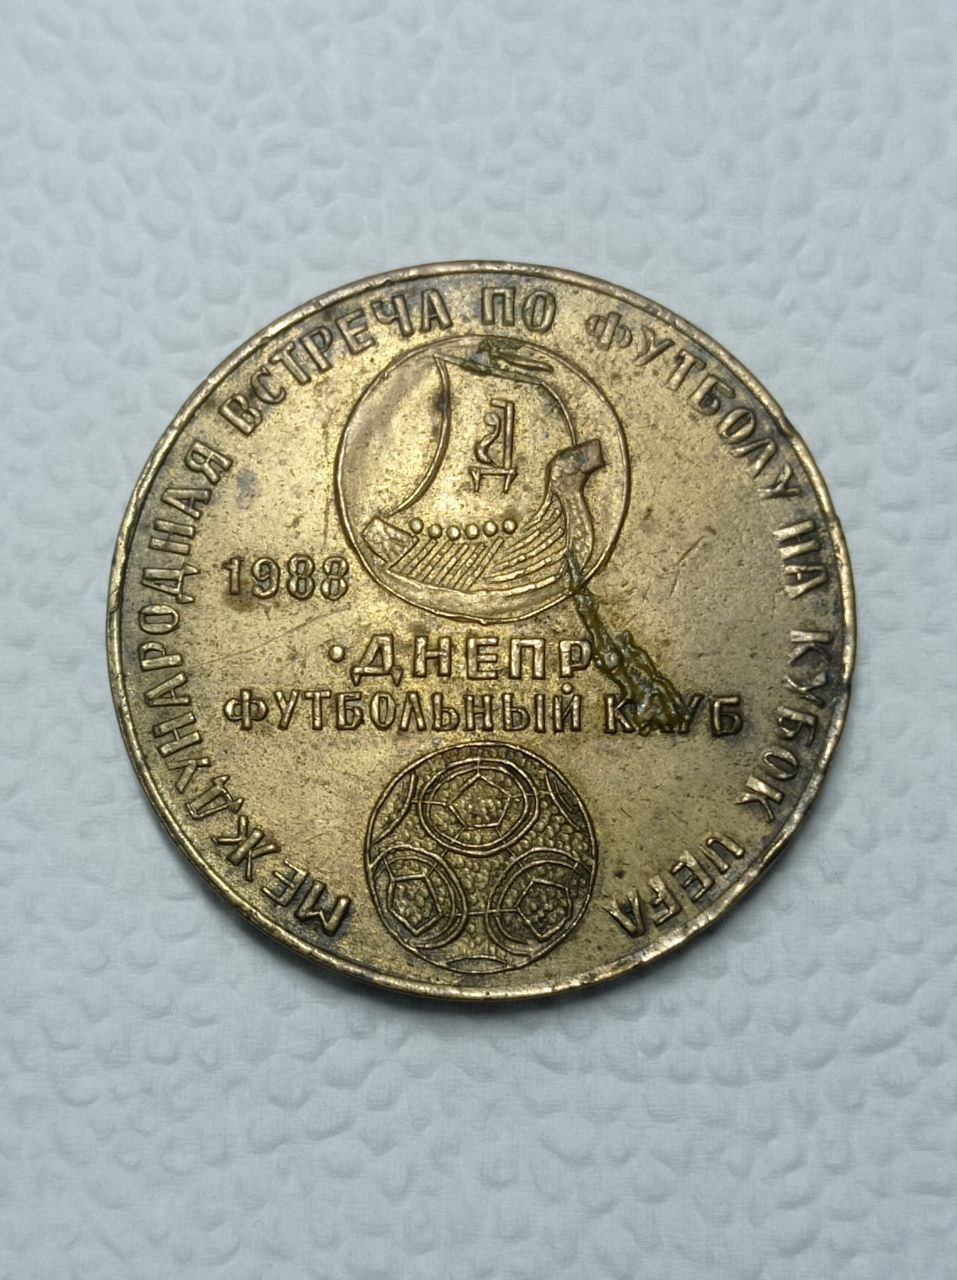 Продам настільну медаль ФК Дніпро-Бордо.1988рік.